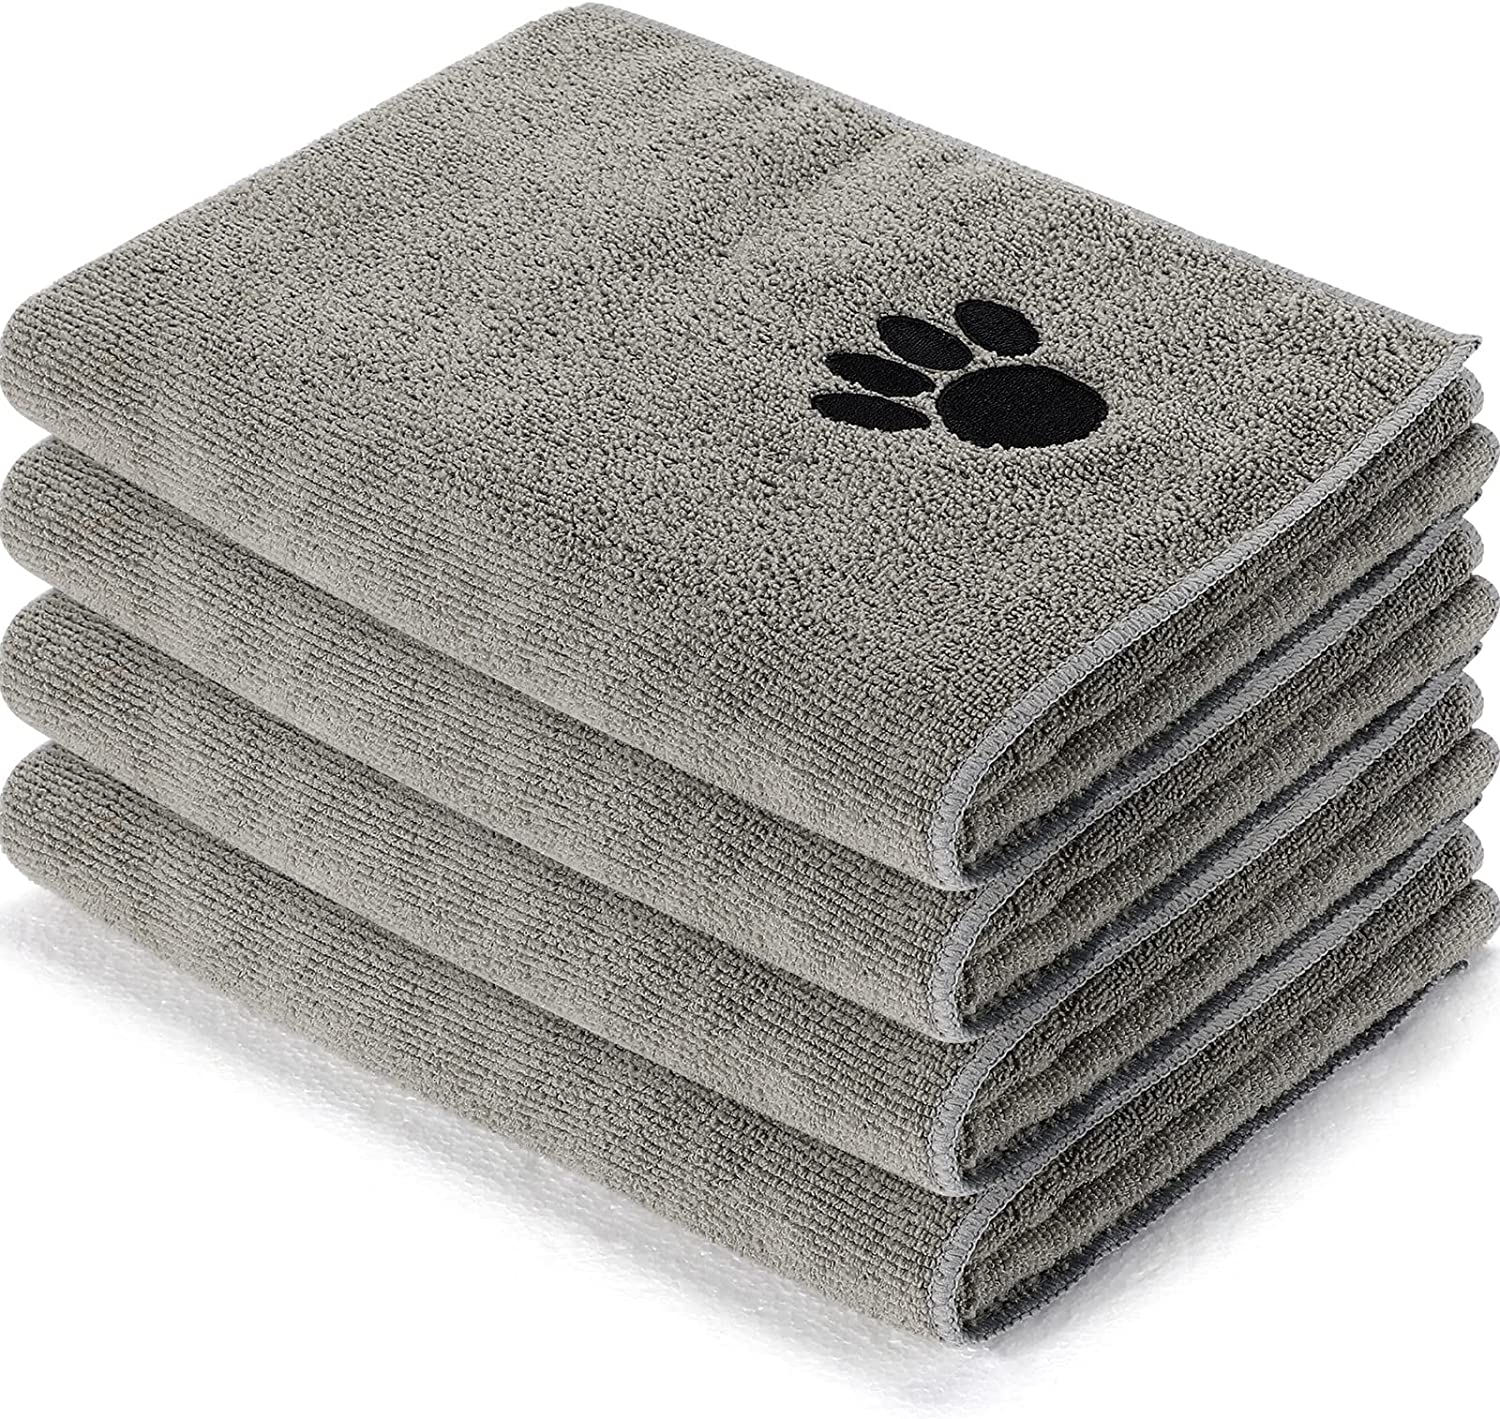 Grooming Towel 20in x 40in 12 pack